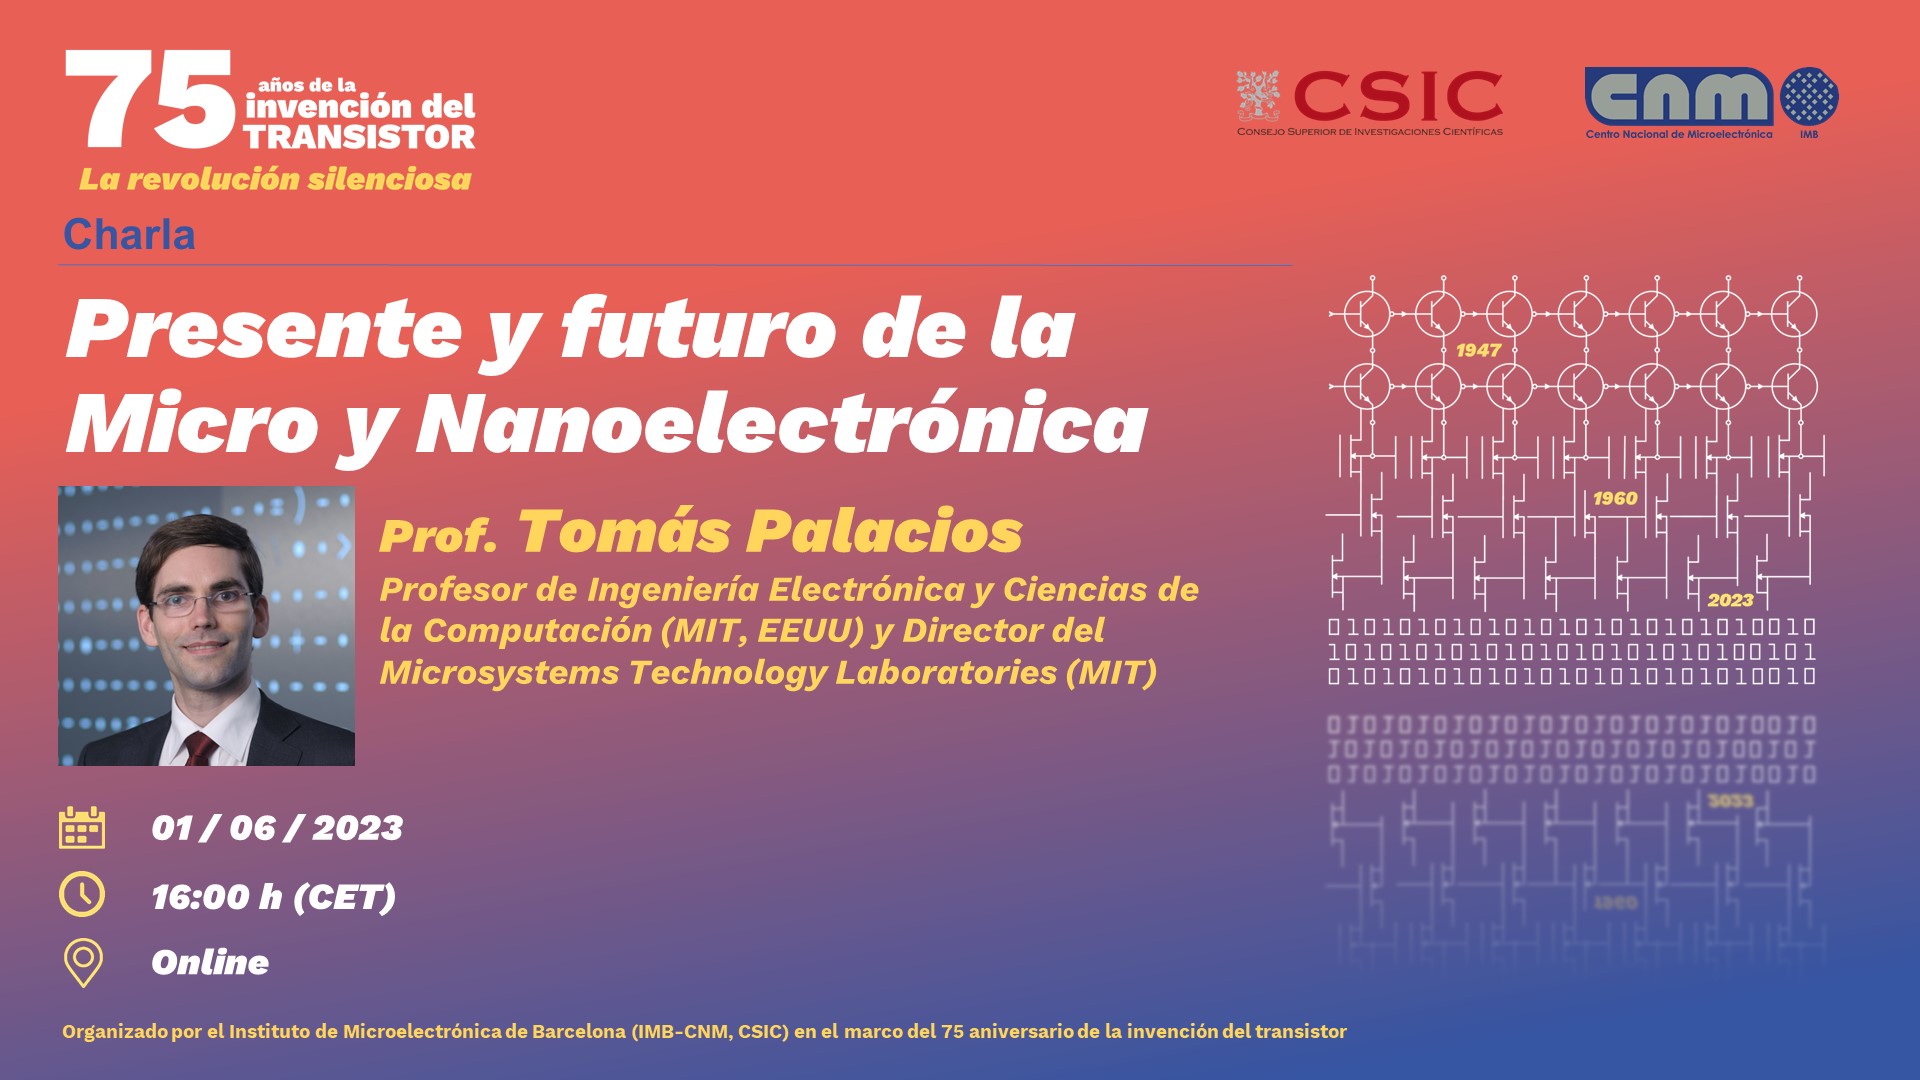 Charla de Tomás Palacios 1 de junio Presente y futuro de la microelectrónica